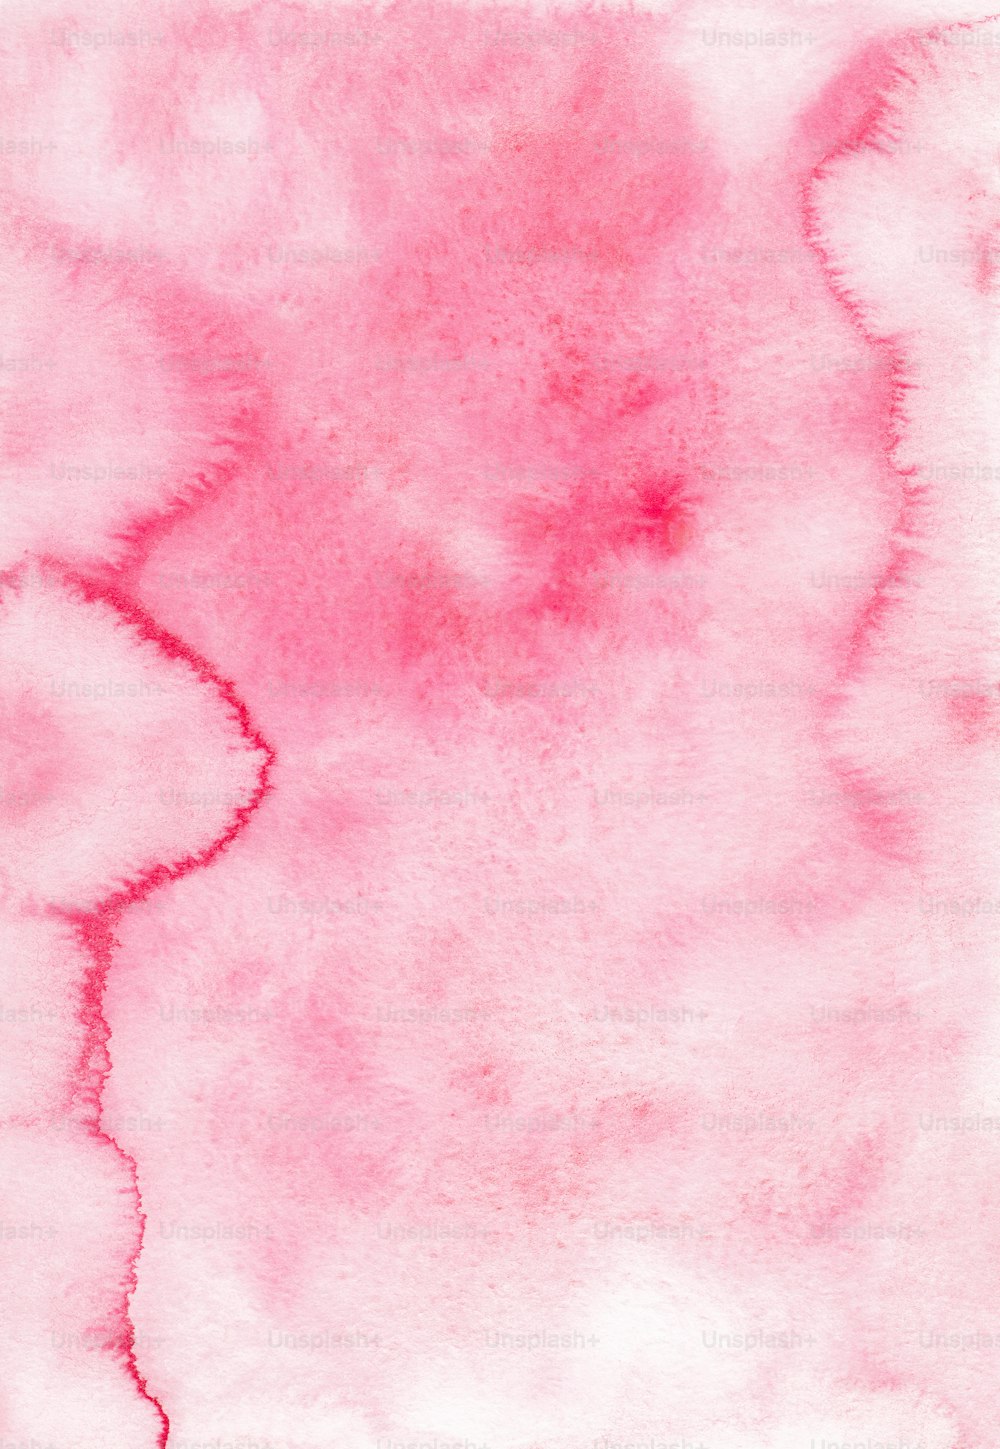 분홍색과 흰색 배경의 수채화 그림